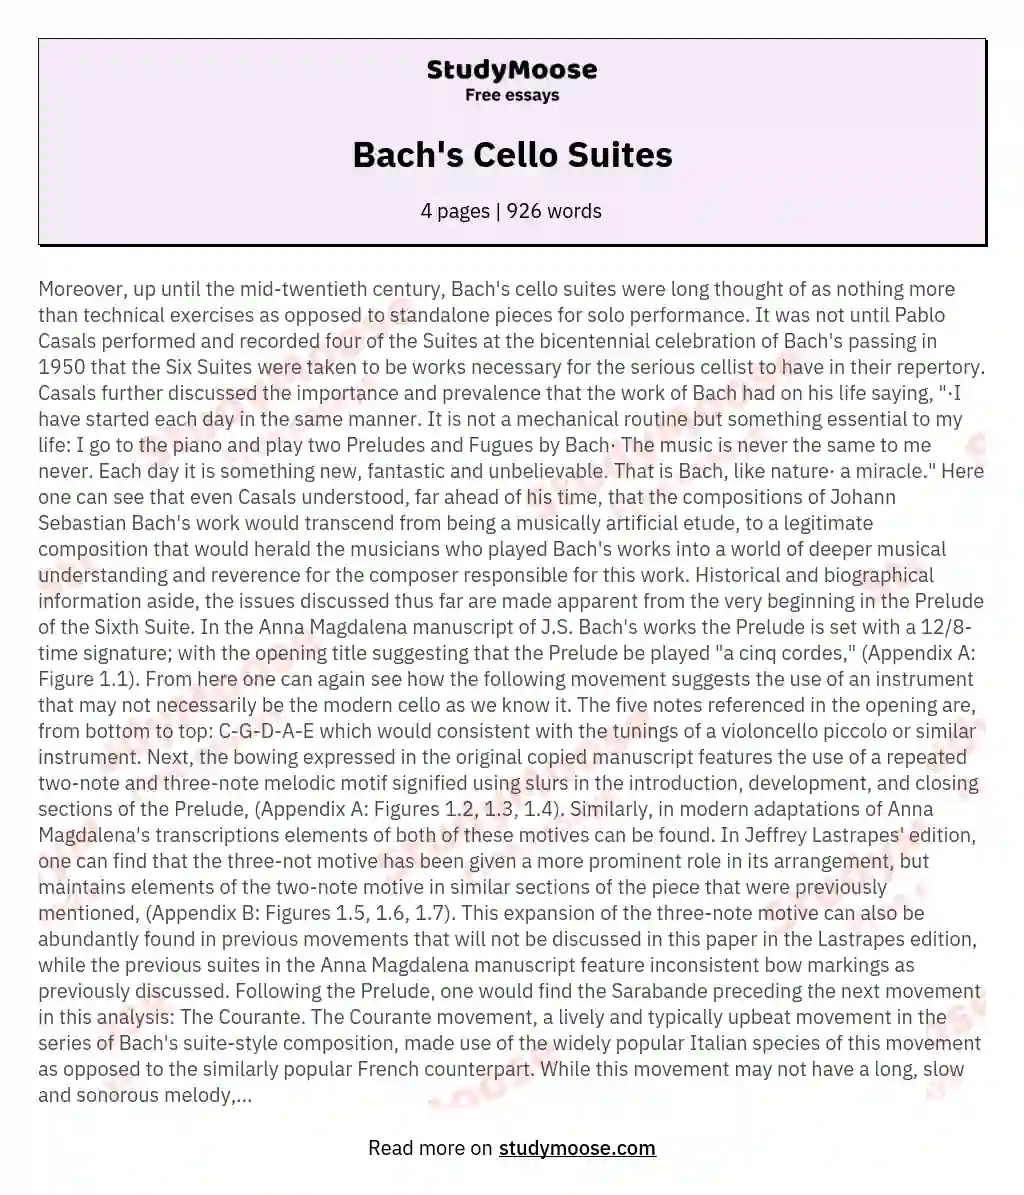 Bach's Cello Suites essay